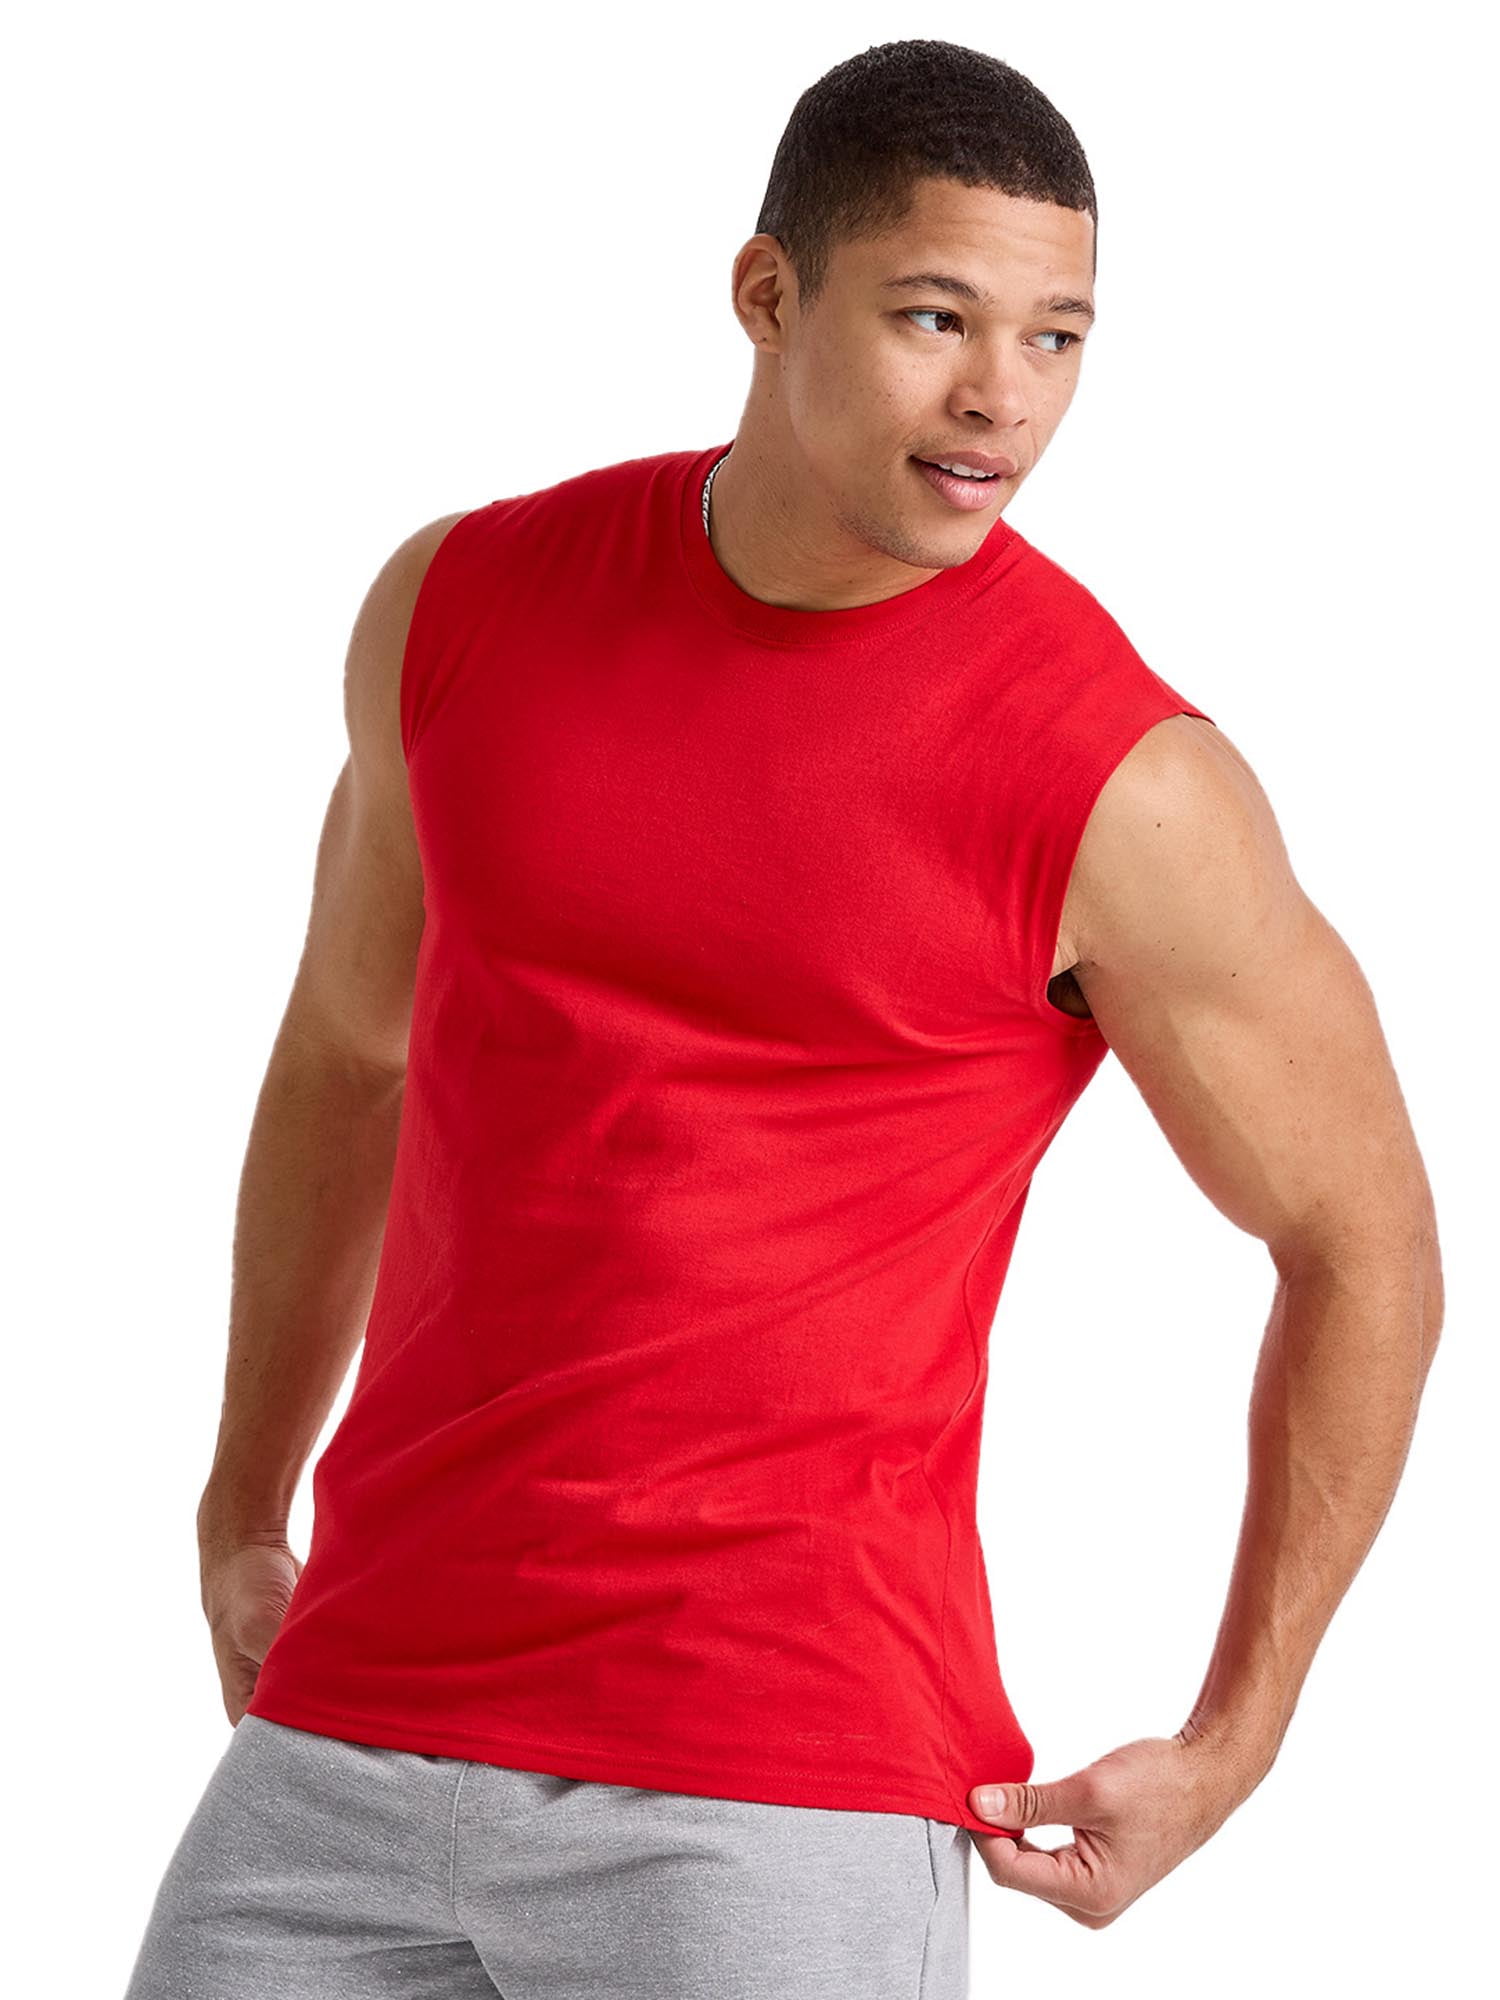 Hanes Men Tank Top Sleeveless Shirt 100% Cotton Lightweight Originals Grey  S-2XL 